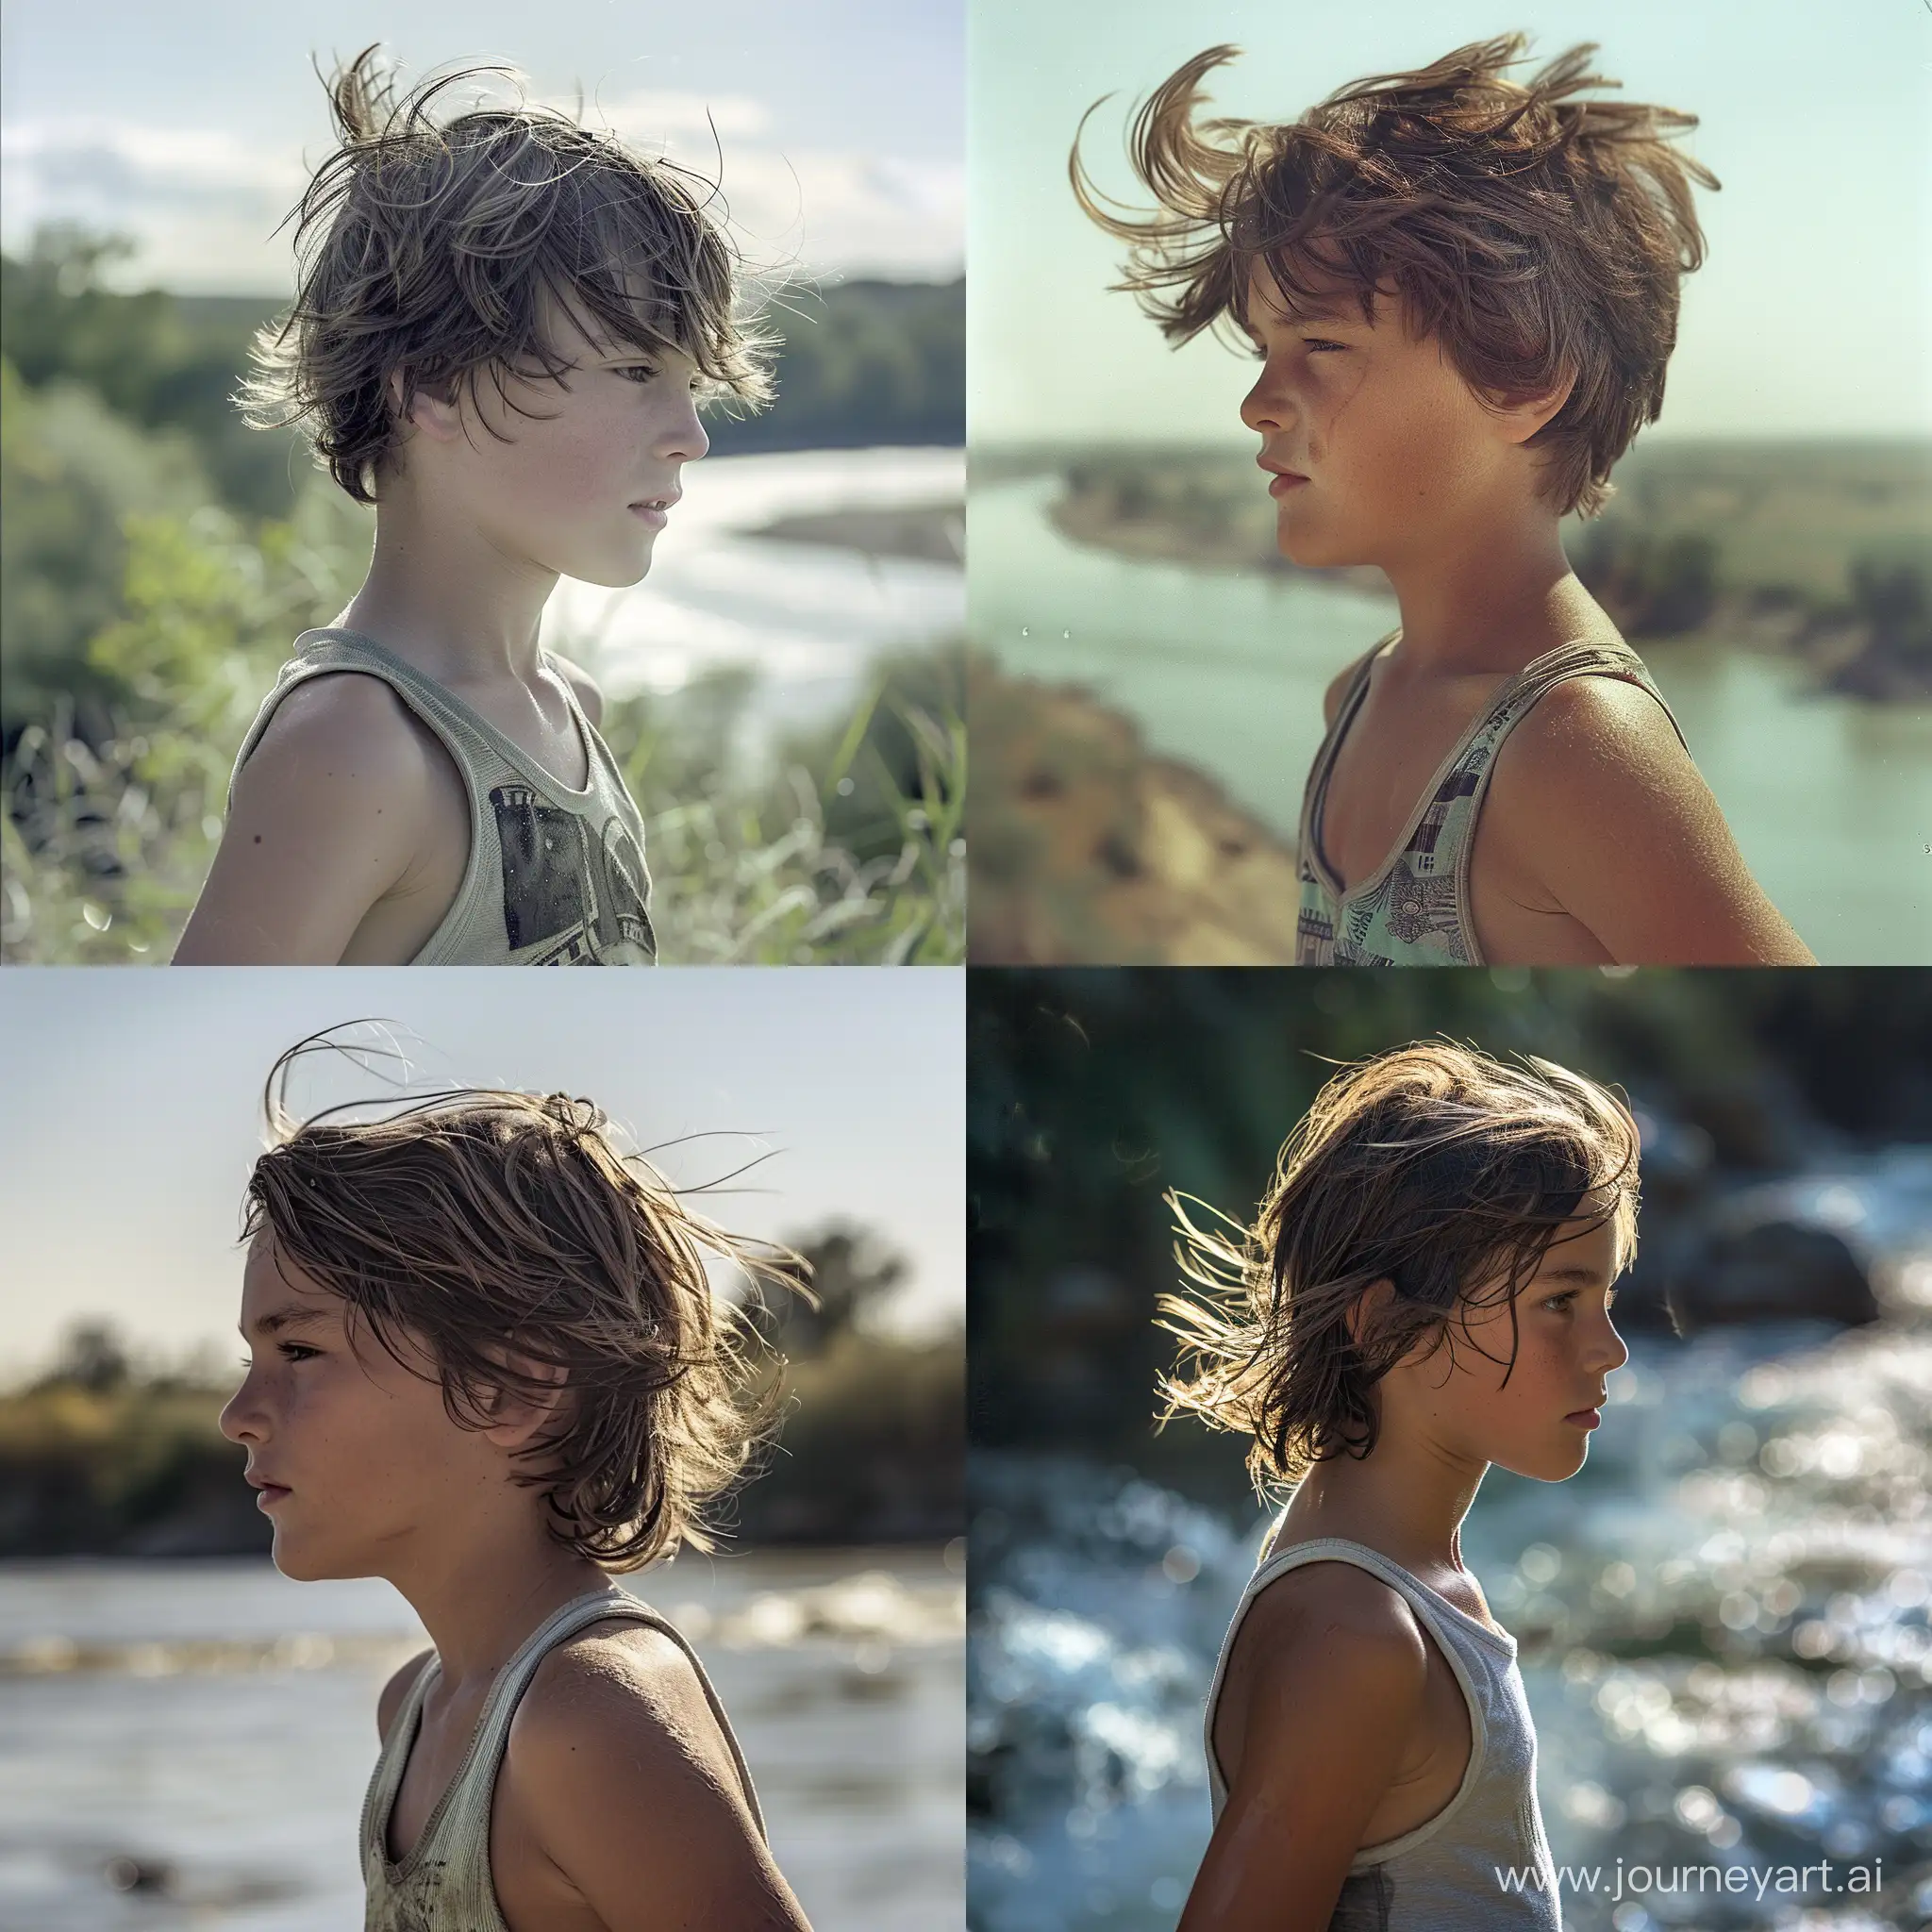 цветное фото,мальчик 12 лет, профиль,поколено, в полоборот, в майке,смотрит в даль,на фоне реки, волосы развивает ветер,яркий день